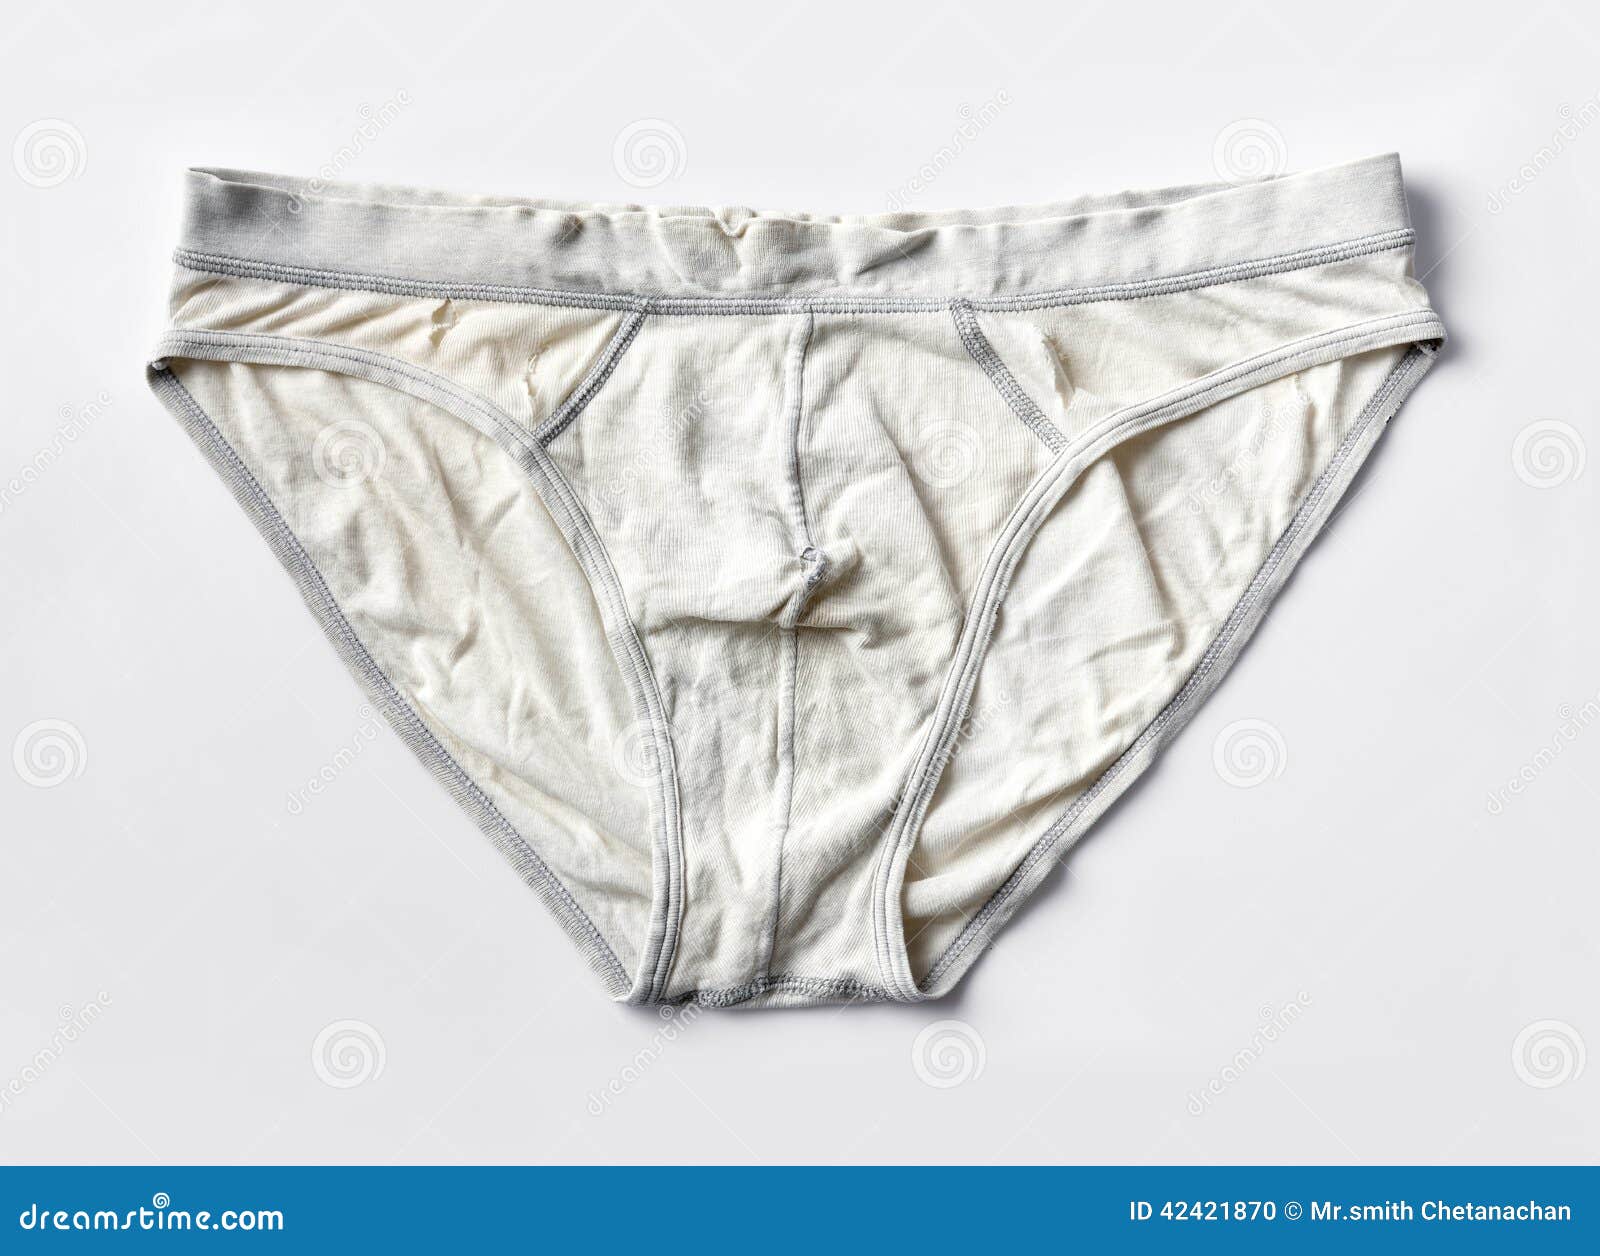 dirty man underwear